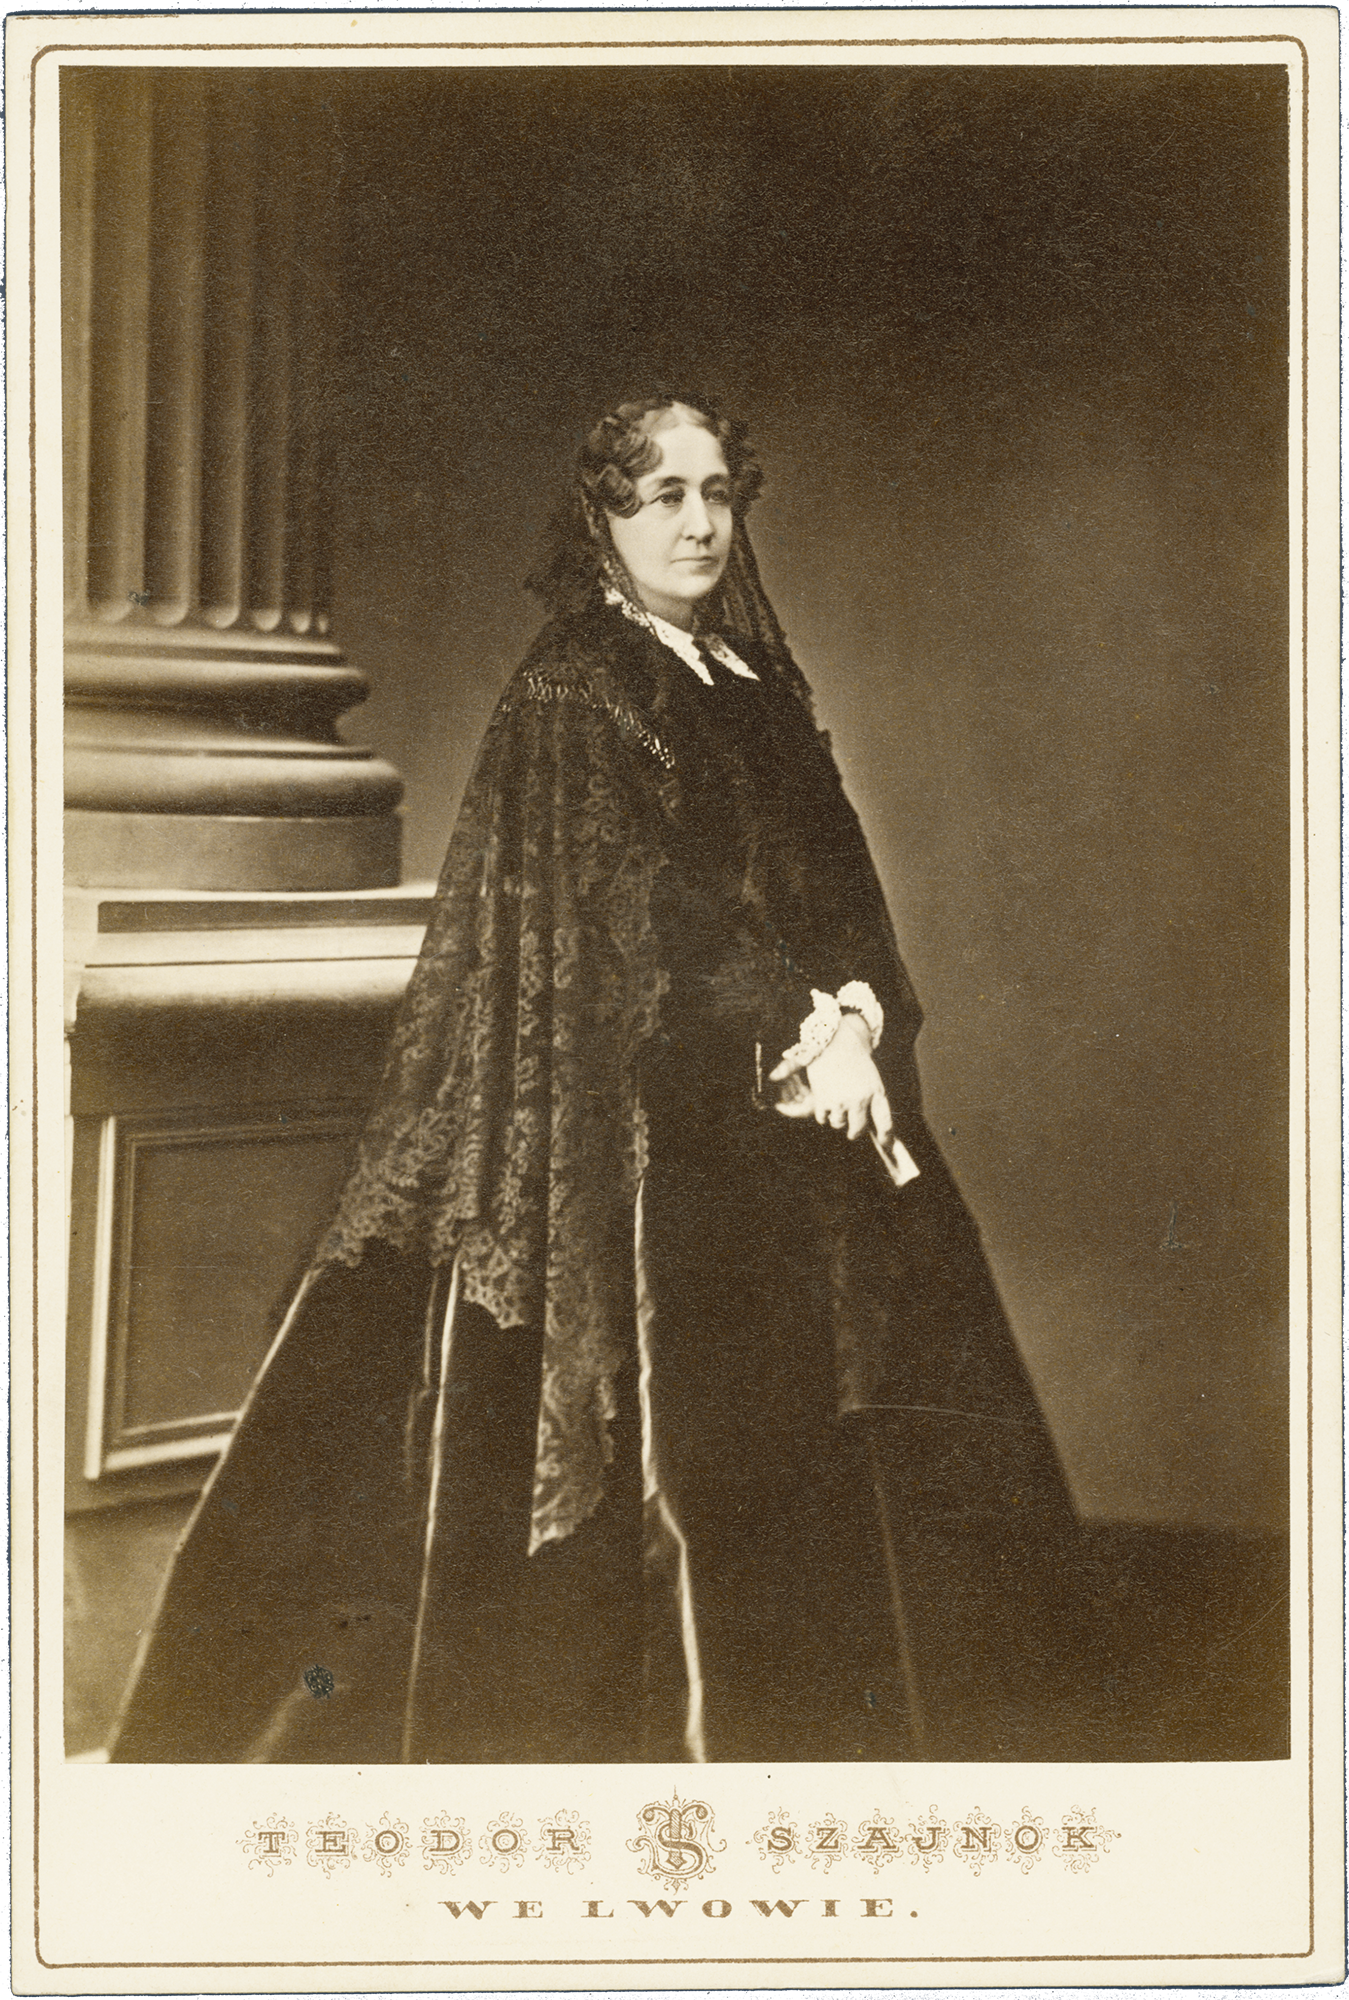 Fotografia archiwalna, czarno biała przedstawiająca dojrzałą kobietę w całej postaci, ubraną w ciemną, długą suknię z czarnym, koronowym welonem na włosach; tło neutralne. Po lewej widoczny fragment kolumny na wysokiej podstawie.